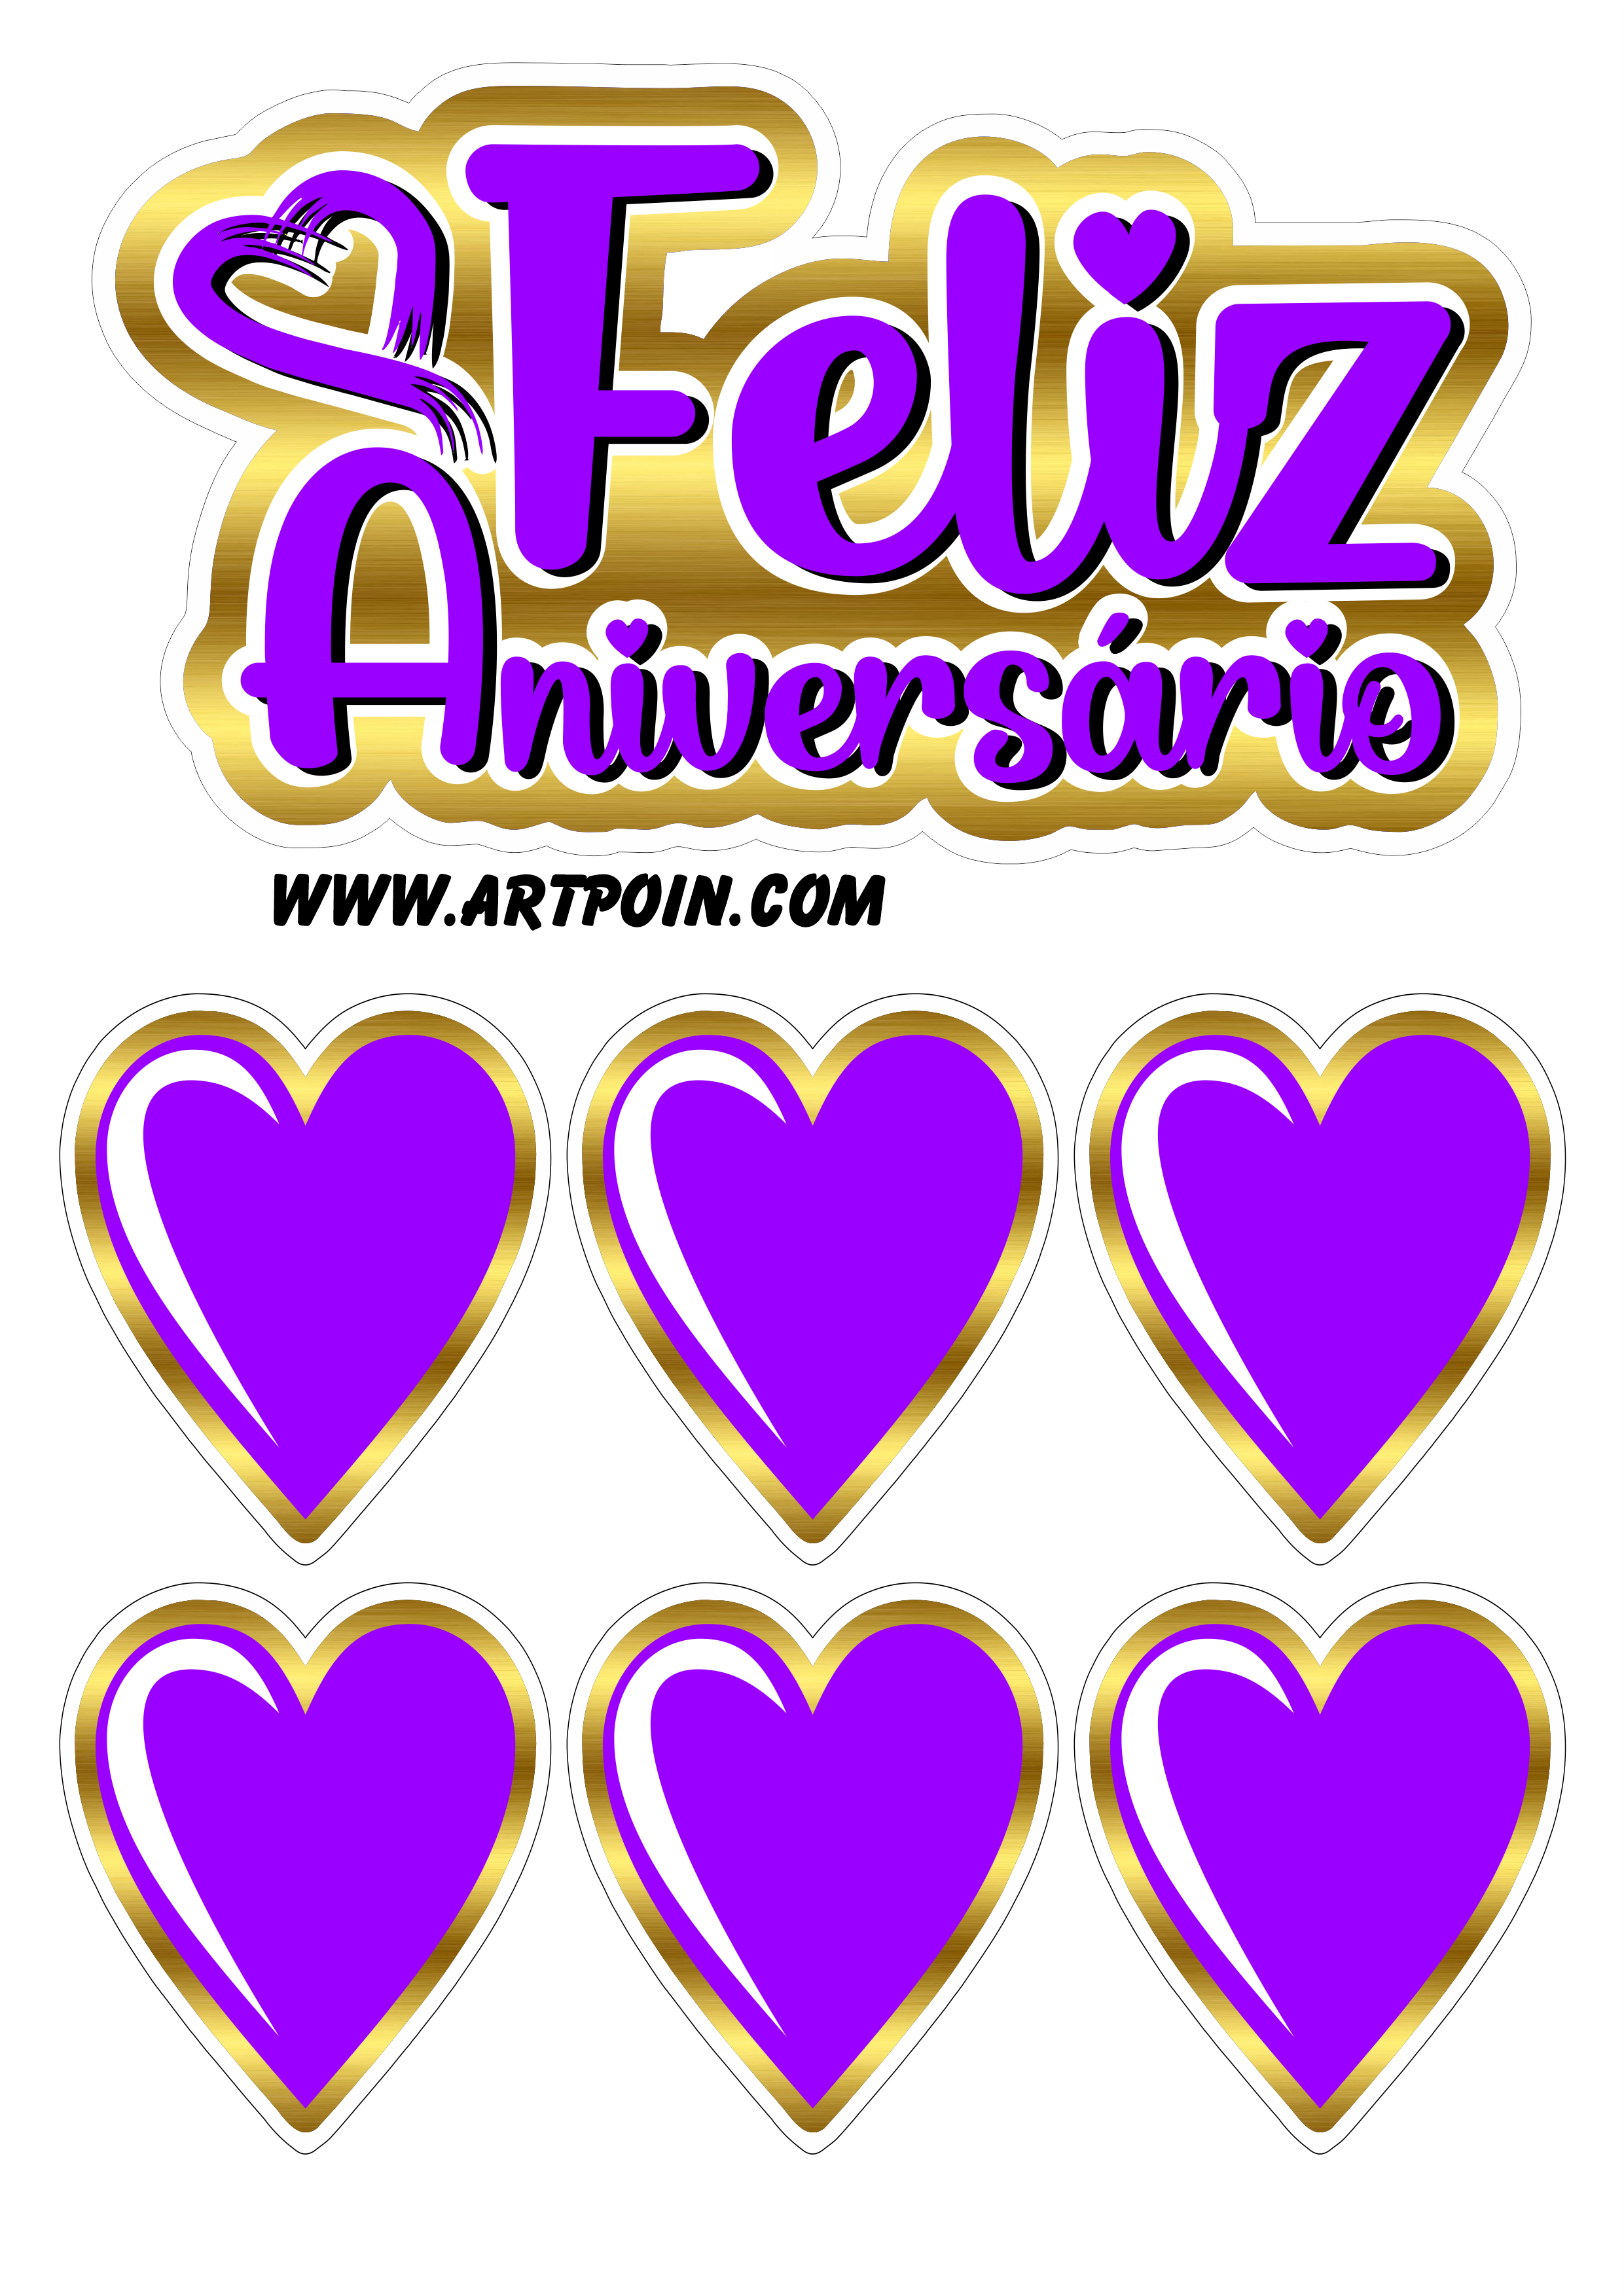 Topo de bolo dourado com lilás corações feliz aniversário decoração de festa temática confeitaria personalizada png